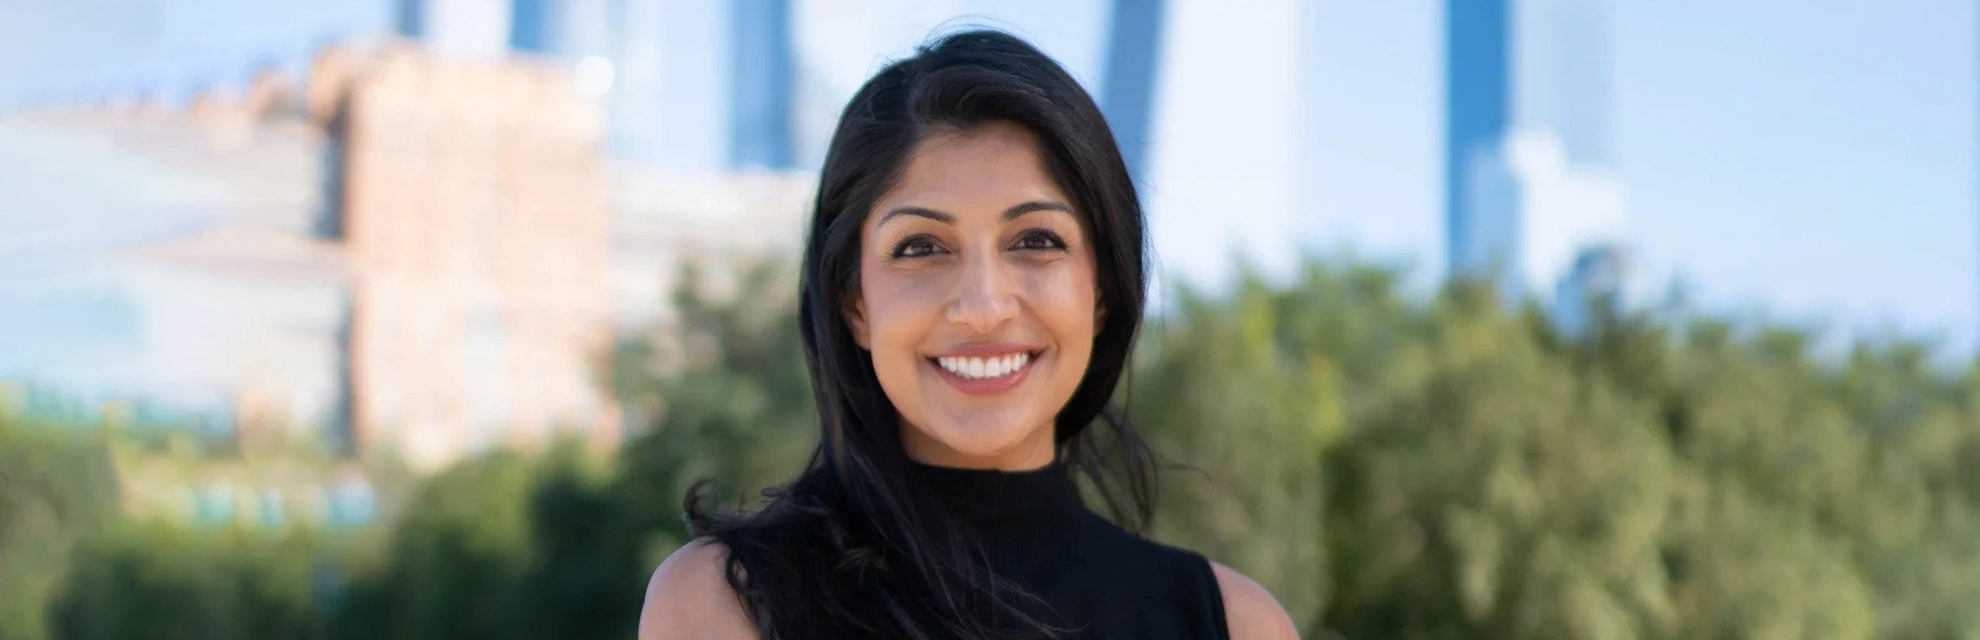 Business executive | Anjali Sud | Global Indian